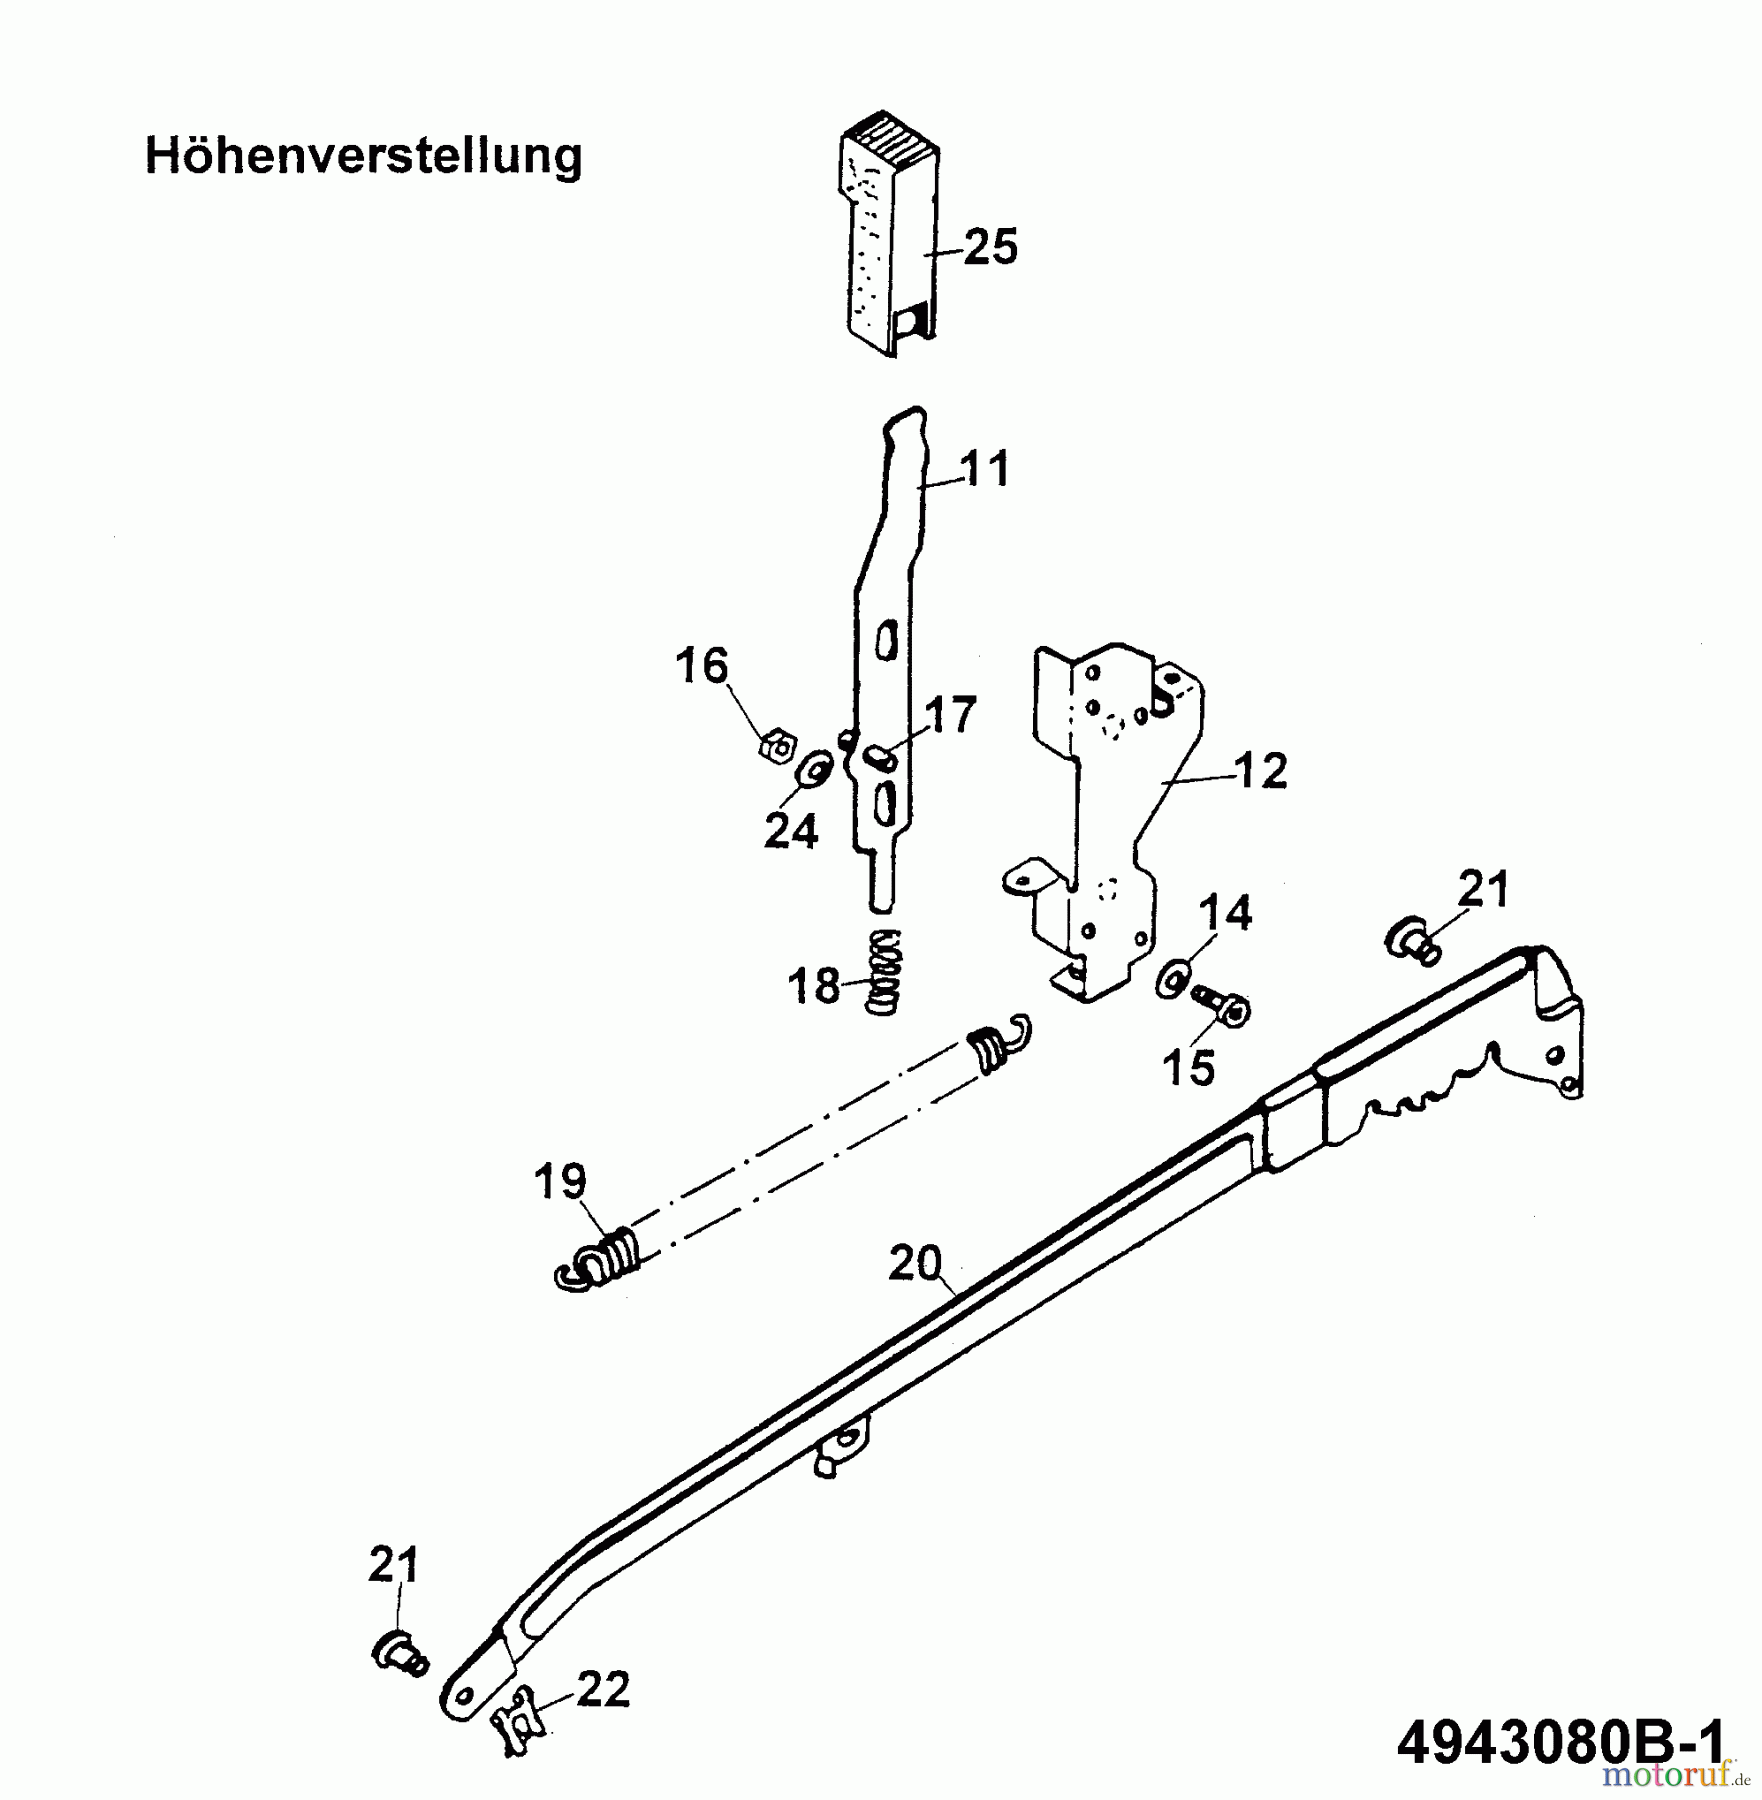  Wolf-Garten Battery mower 6.42 ACN 4943080 Series B  (1999) Cutting hight adjustment